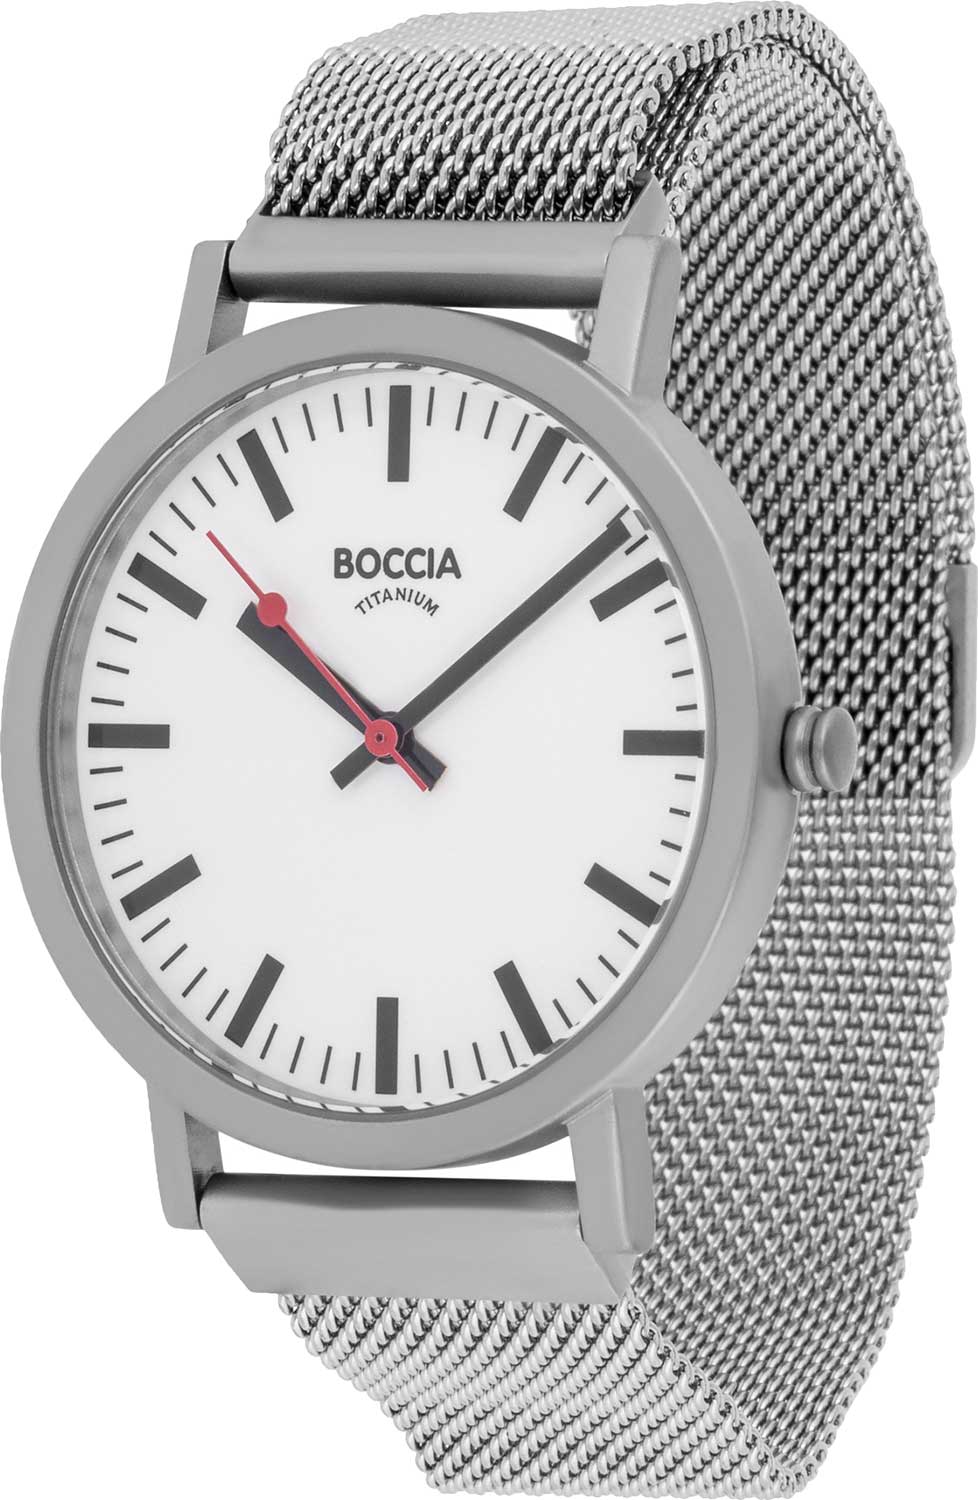 Фото - Женские часы Boccia Titanium 3651-06 женские часы boccia titanium 3651 03